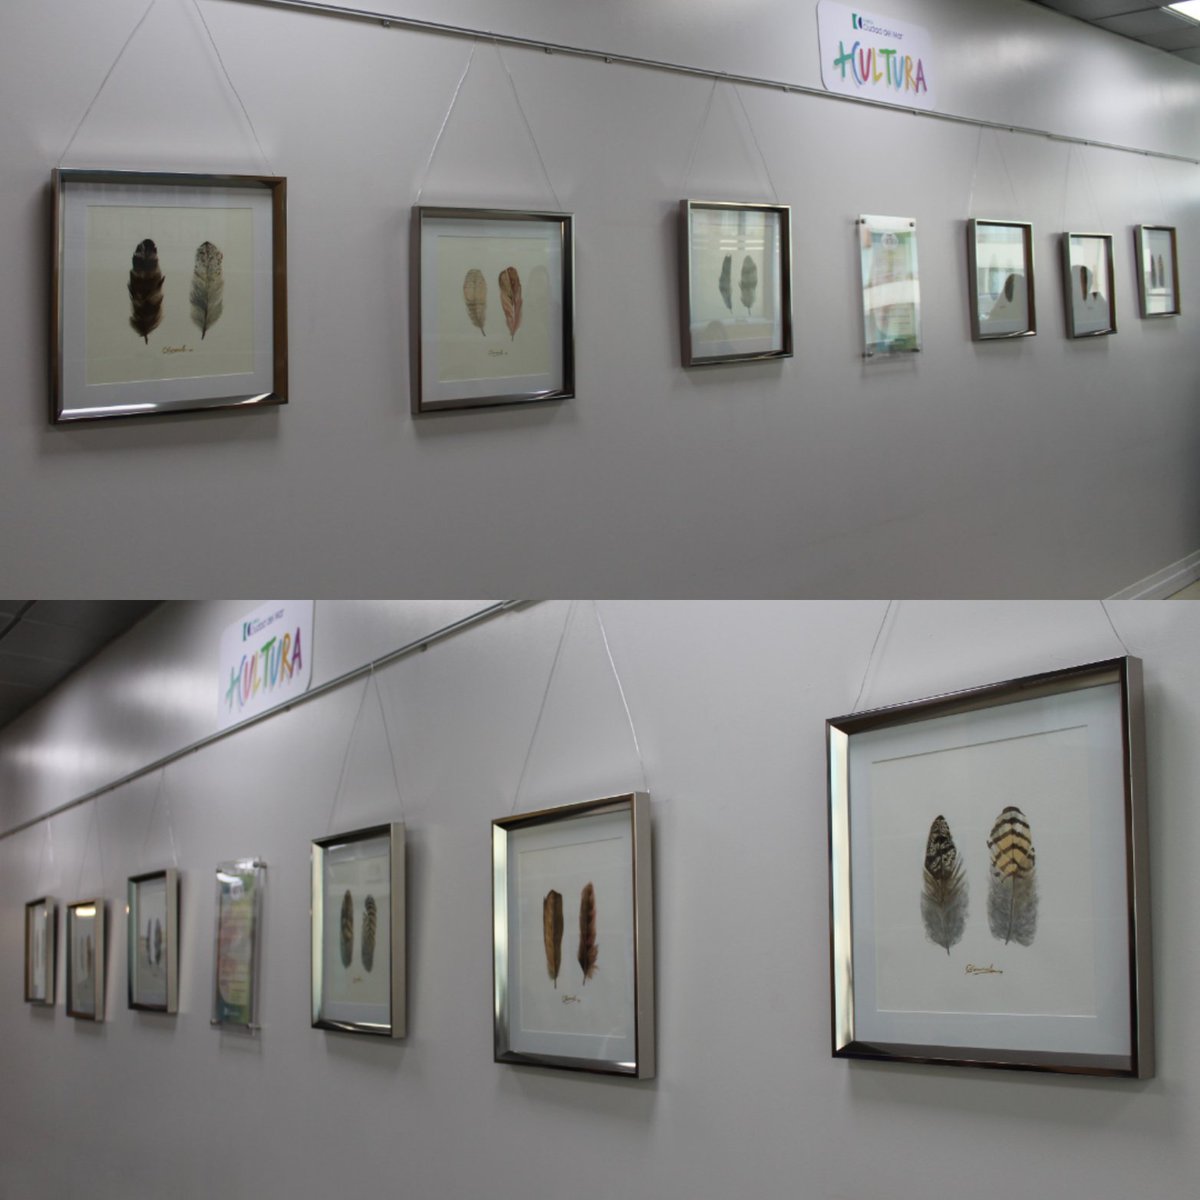 ¡Ven a conocer la nueva exposición denominada 'Ellas', a cargo de la artista Claudia Barrera Arriagada! 🎨 Esta exhibición está disponible en el 5to piso de nuestra Clínica, en el marco del programa CCdM + Cultura.